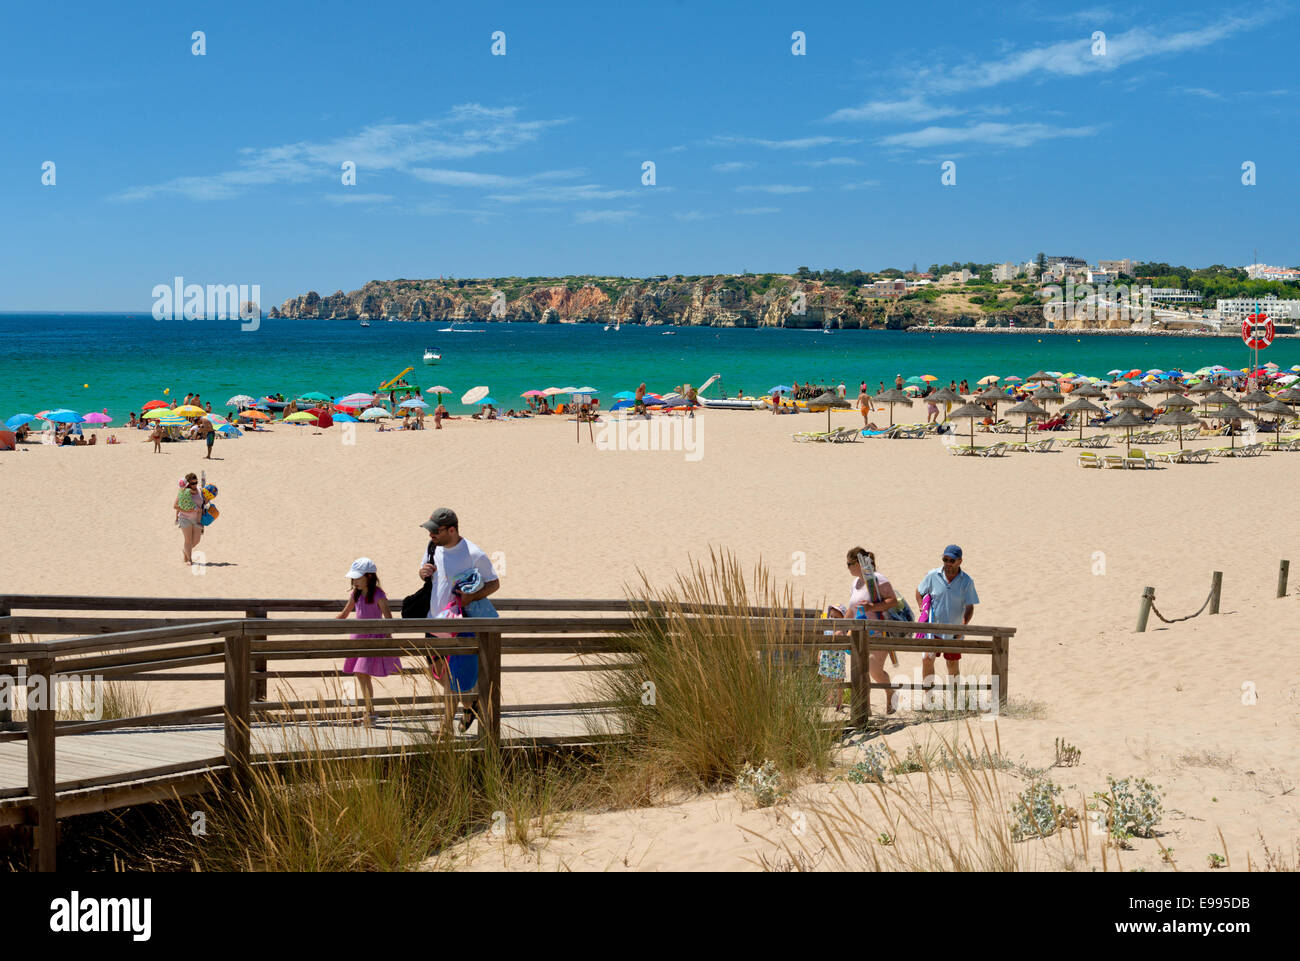 Portugal, the Algarve, Meia praia beach, Lagos Stock Photo - Alamy